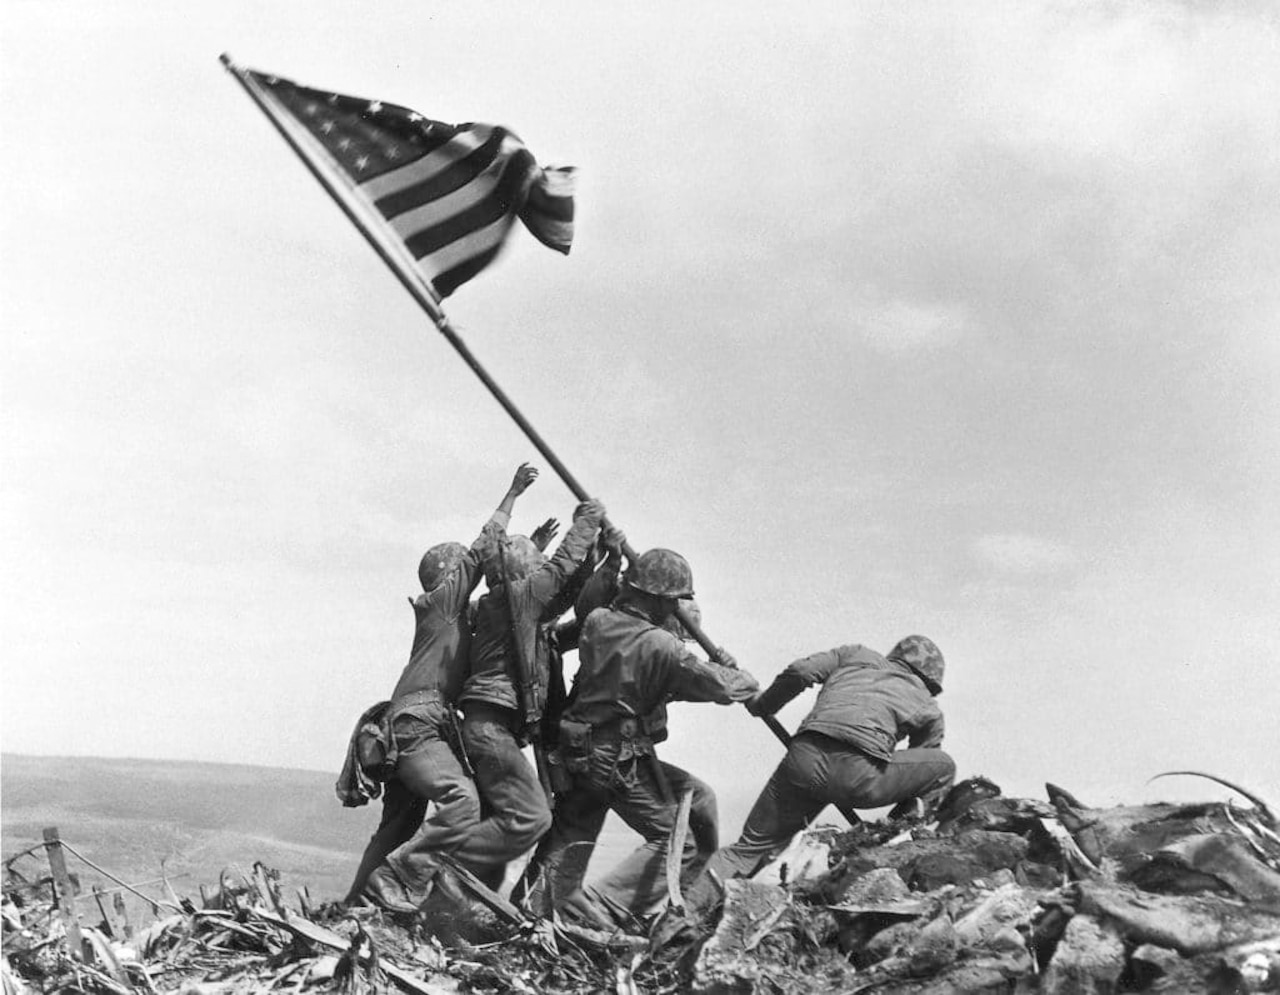 U.S. service members in combat gear raise a flag.